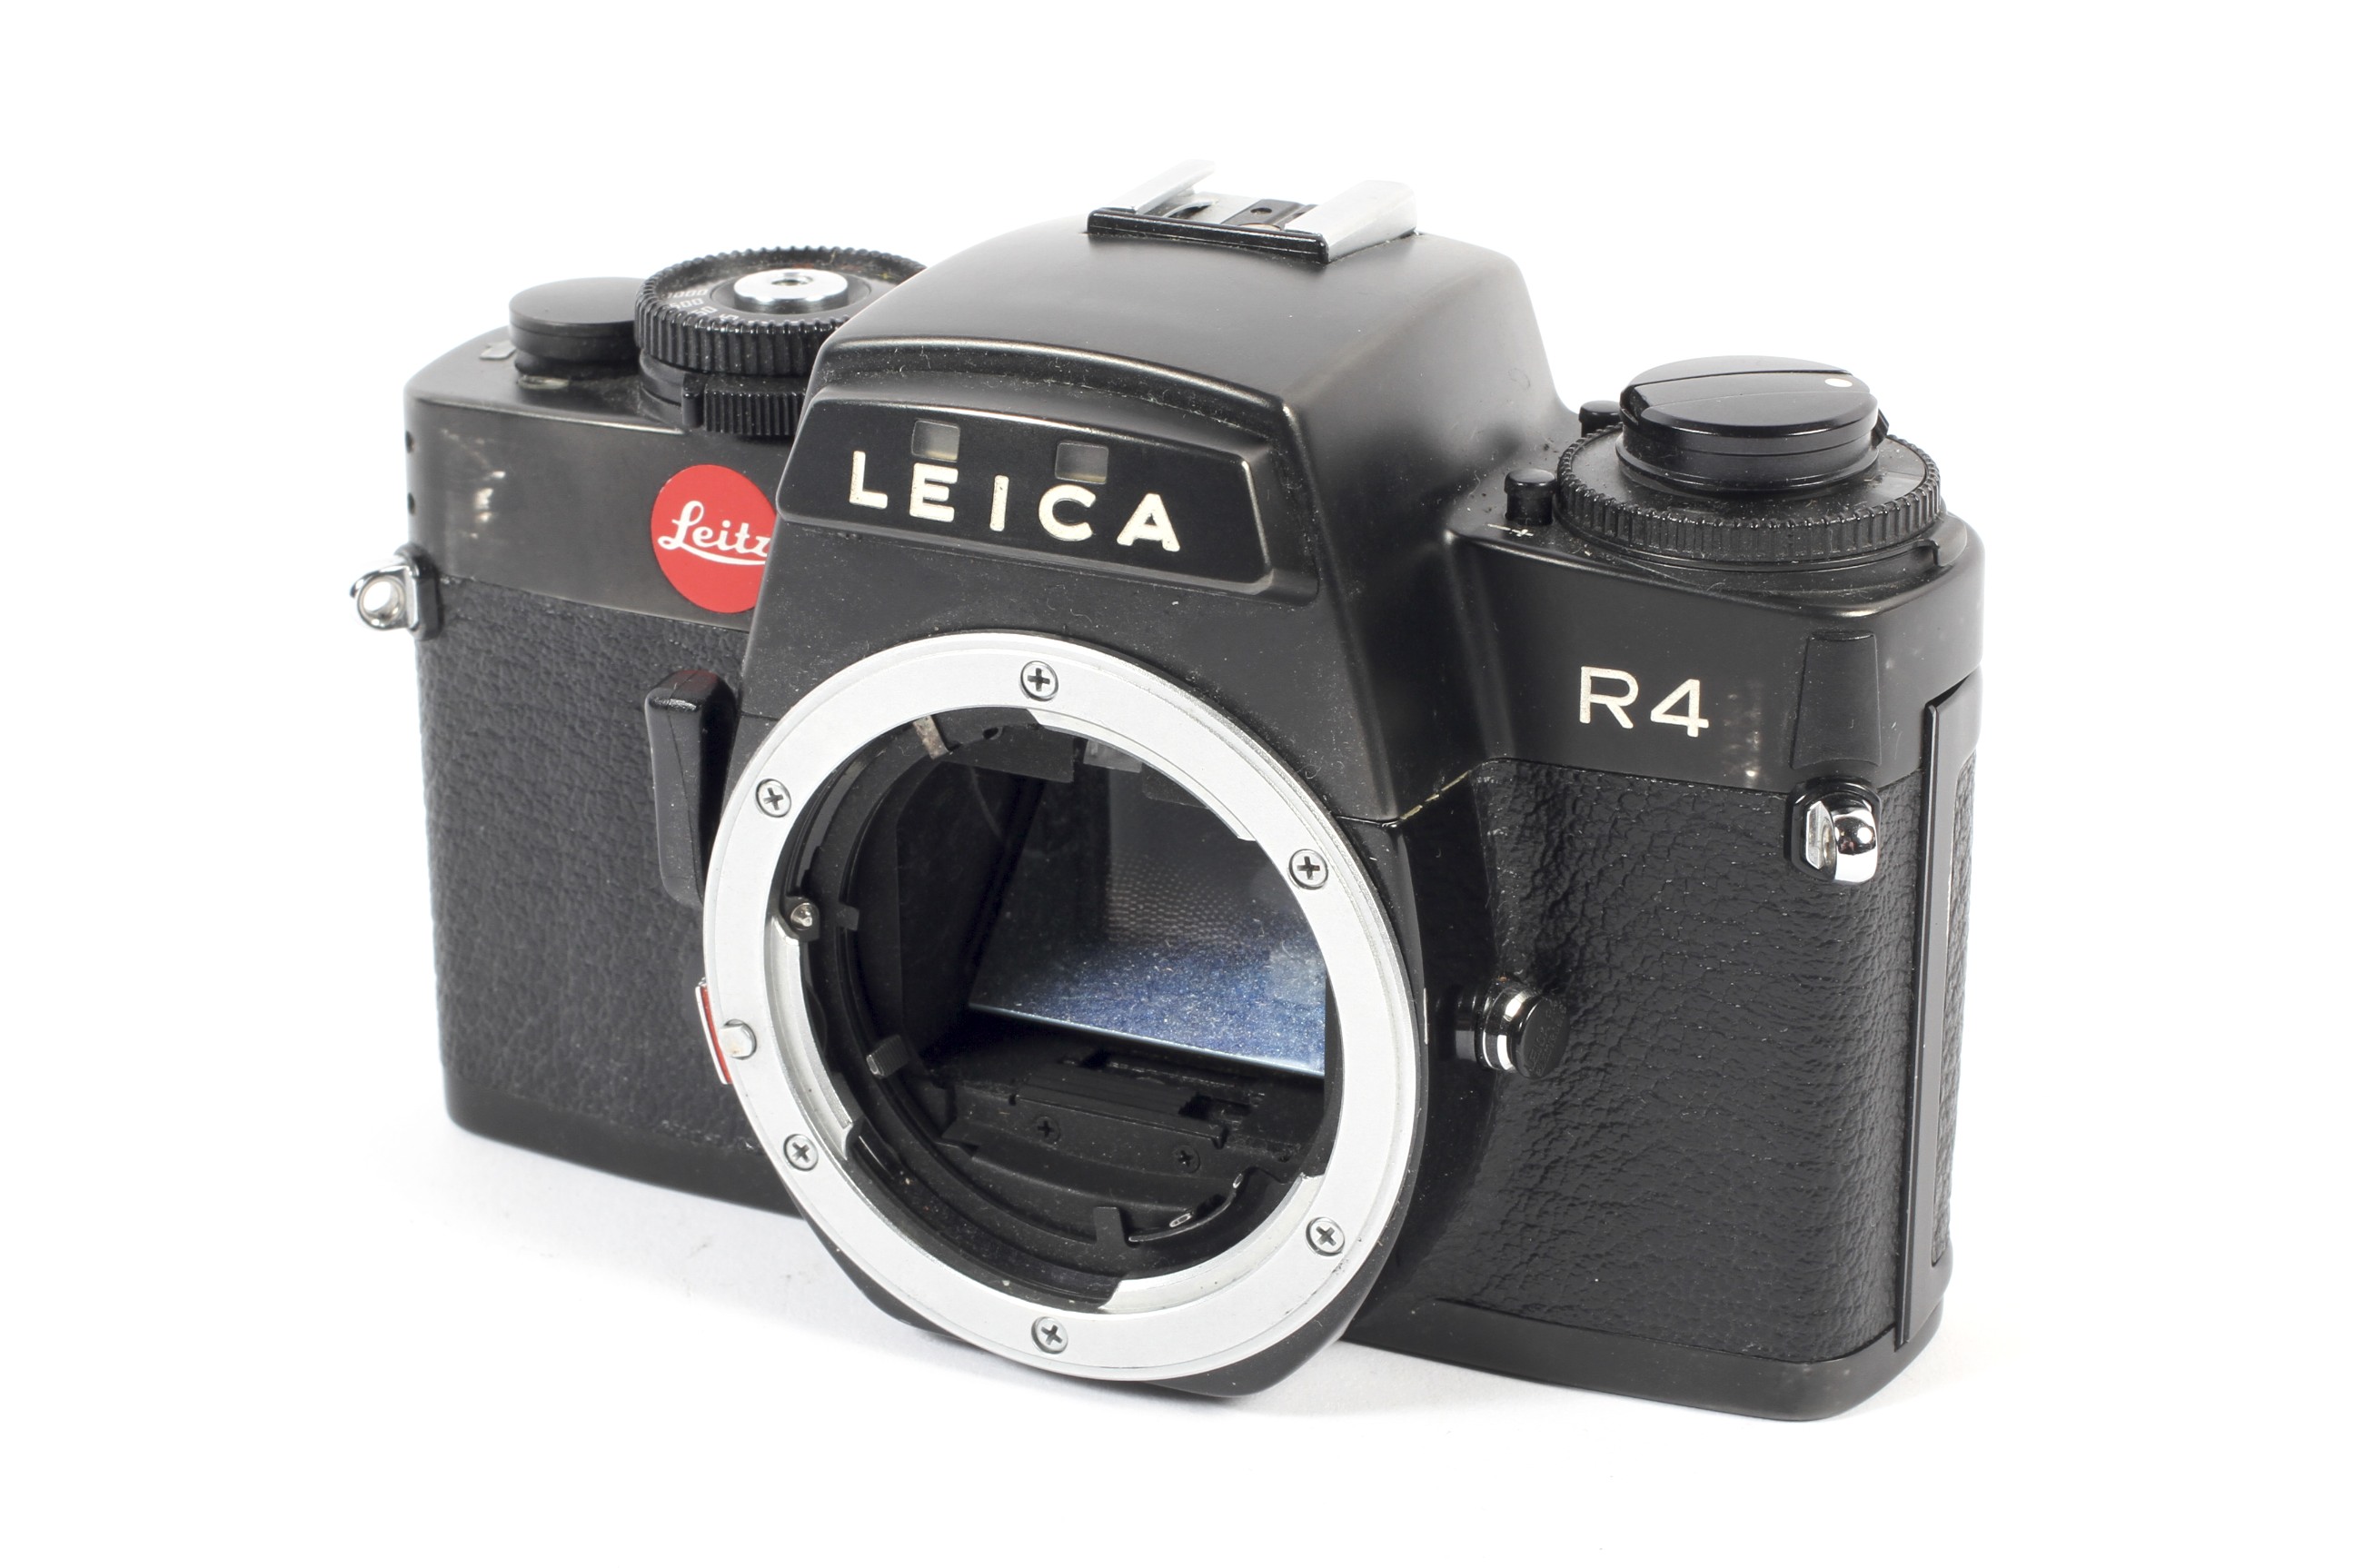 A black Leica R4 35mm SLR camera body.